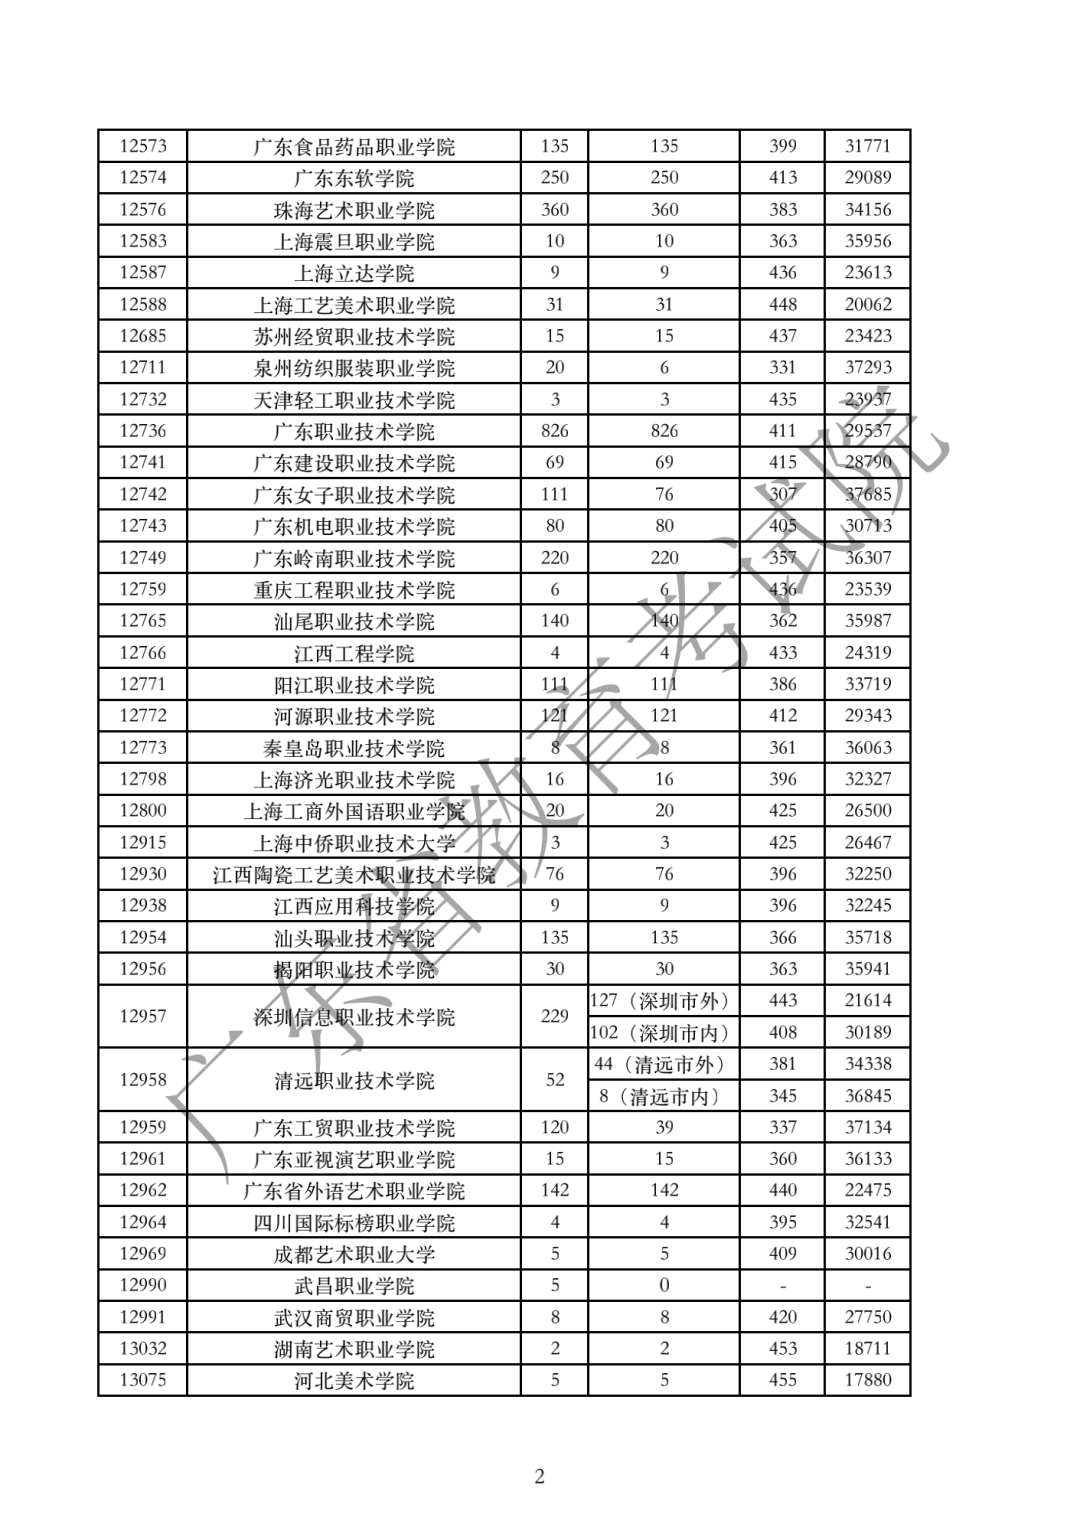 广东高考分数线2020_2020年各省高考录取控制分数线汇总